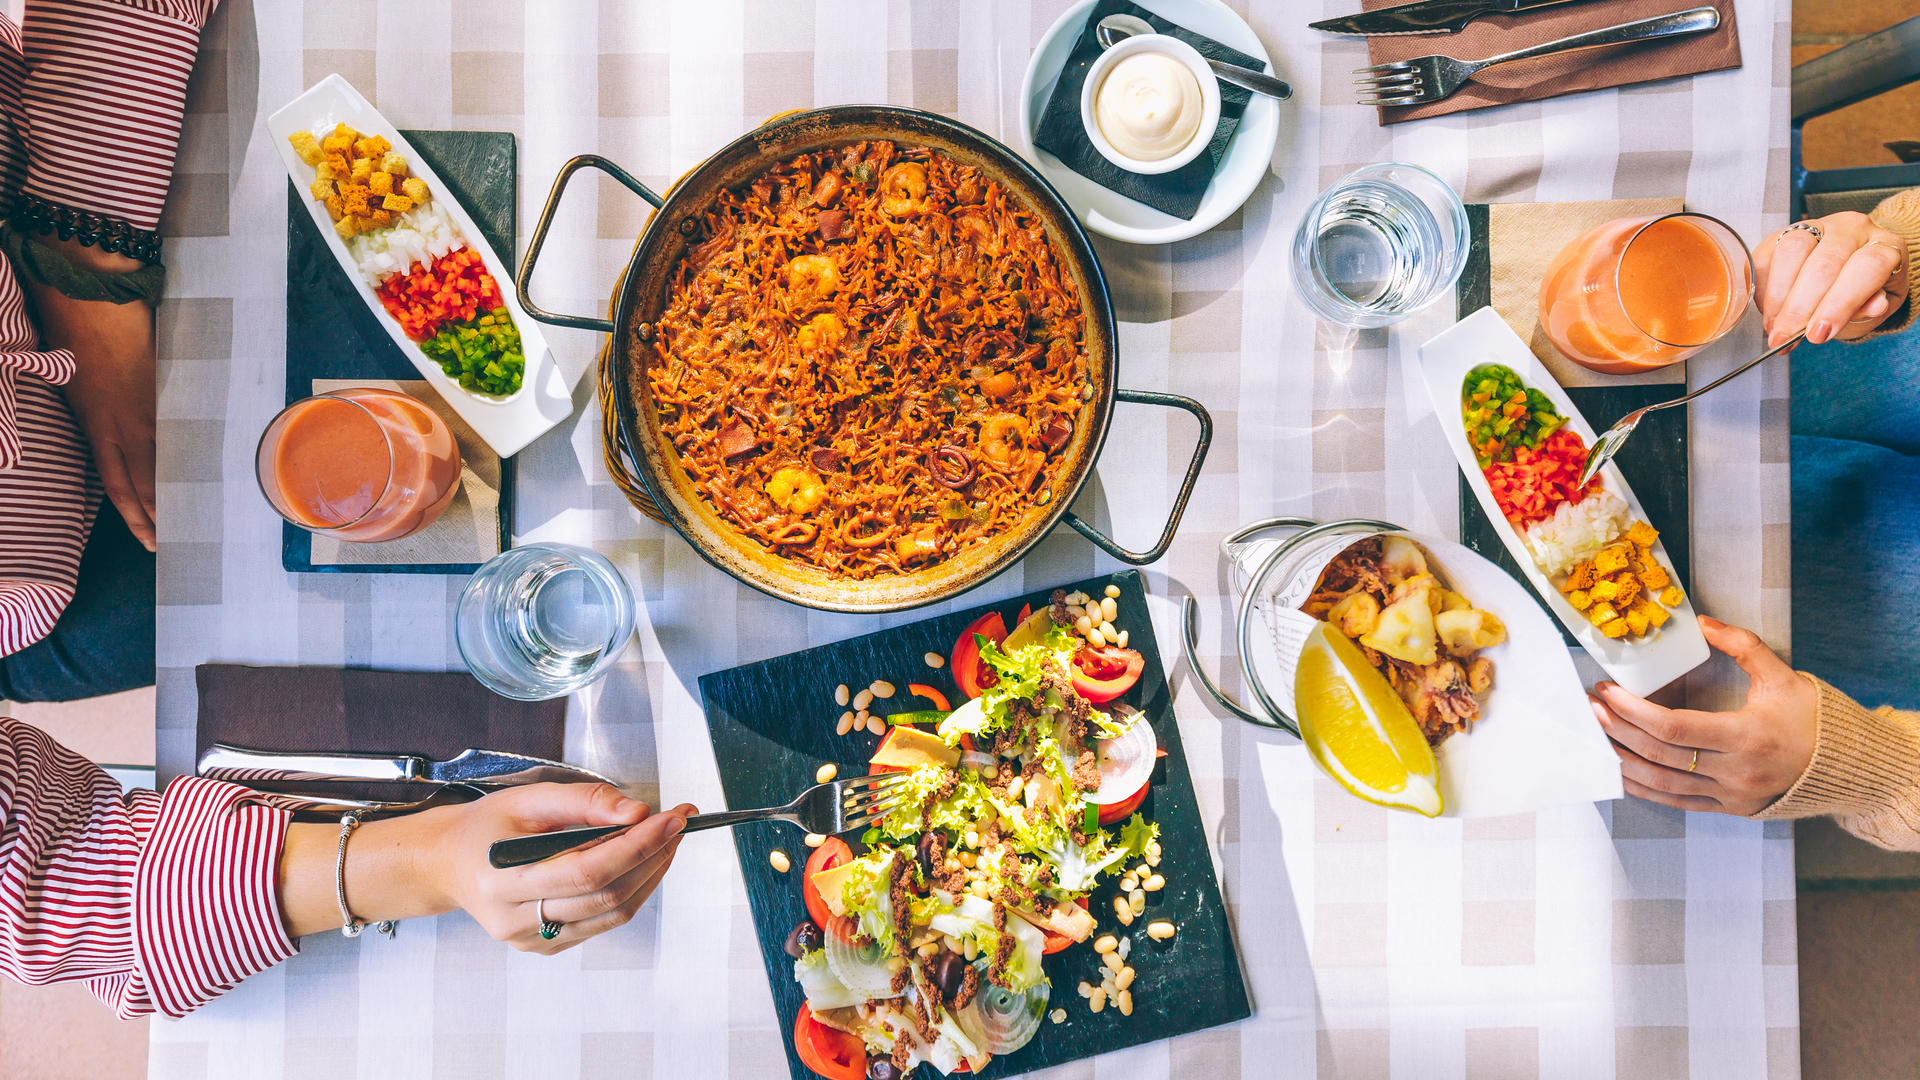 Mesa con paella y ensalada mediterranea